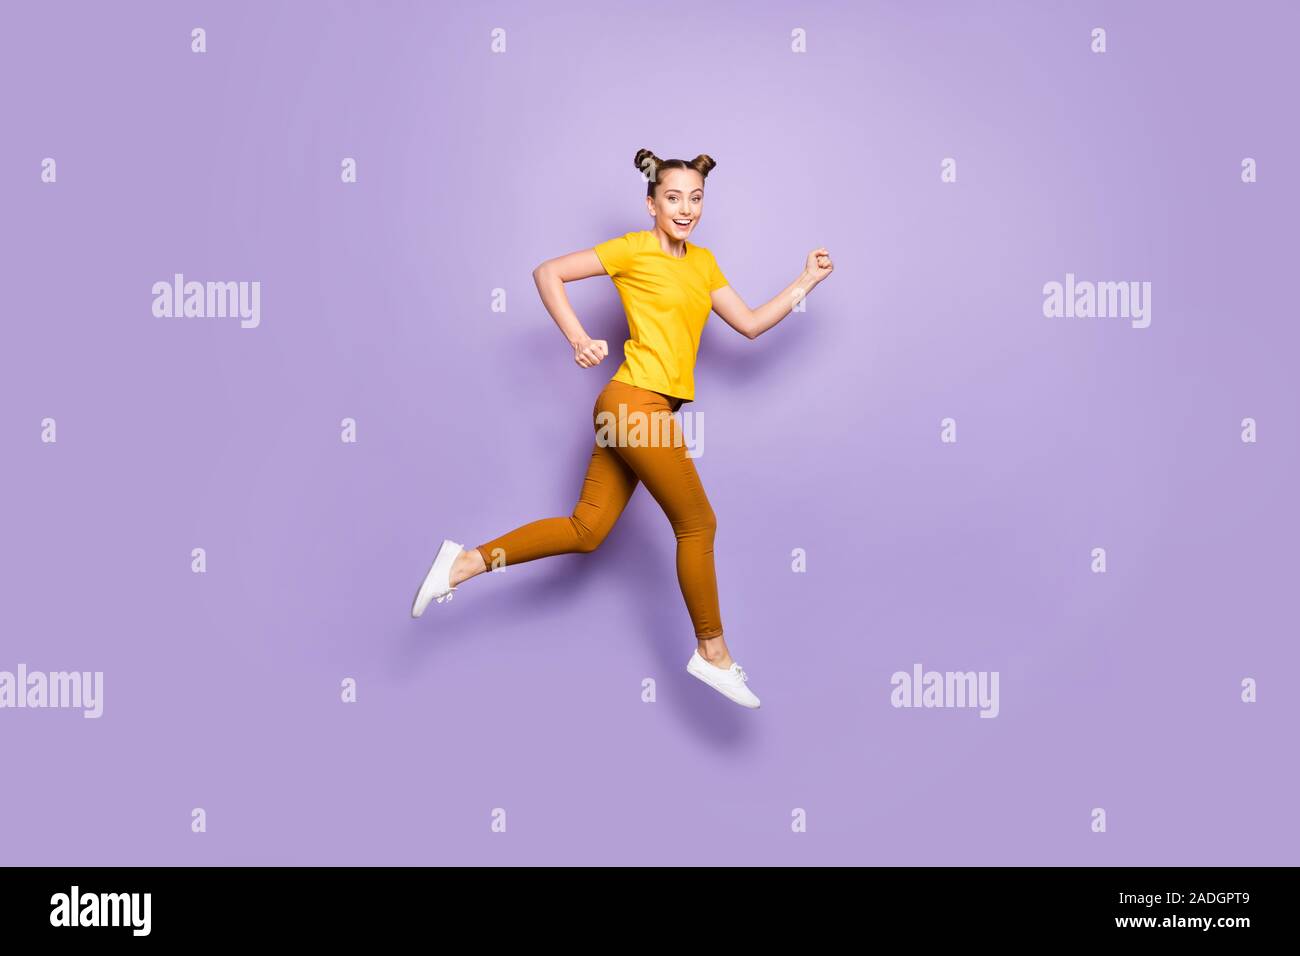 Full Size photo de profil haut saut dame incroyable se précipitant pour  ligne d'arrivée course de championnat porter le jaune t-shirt pantalon  violet pastel isolés Photo Stock - Alamy